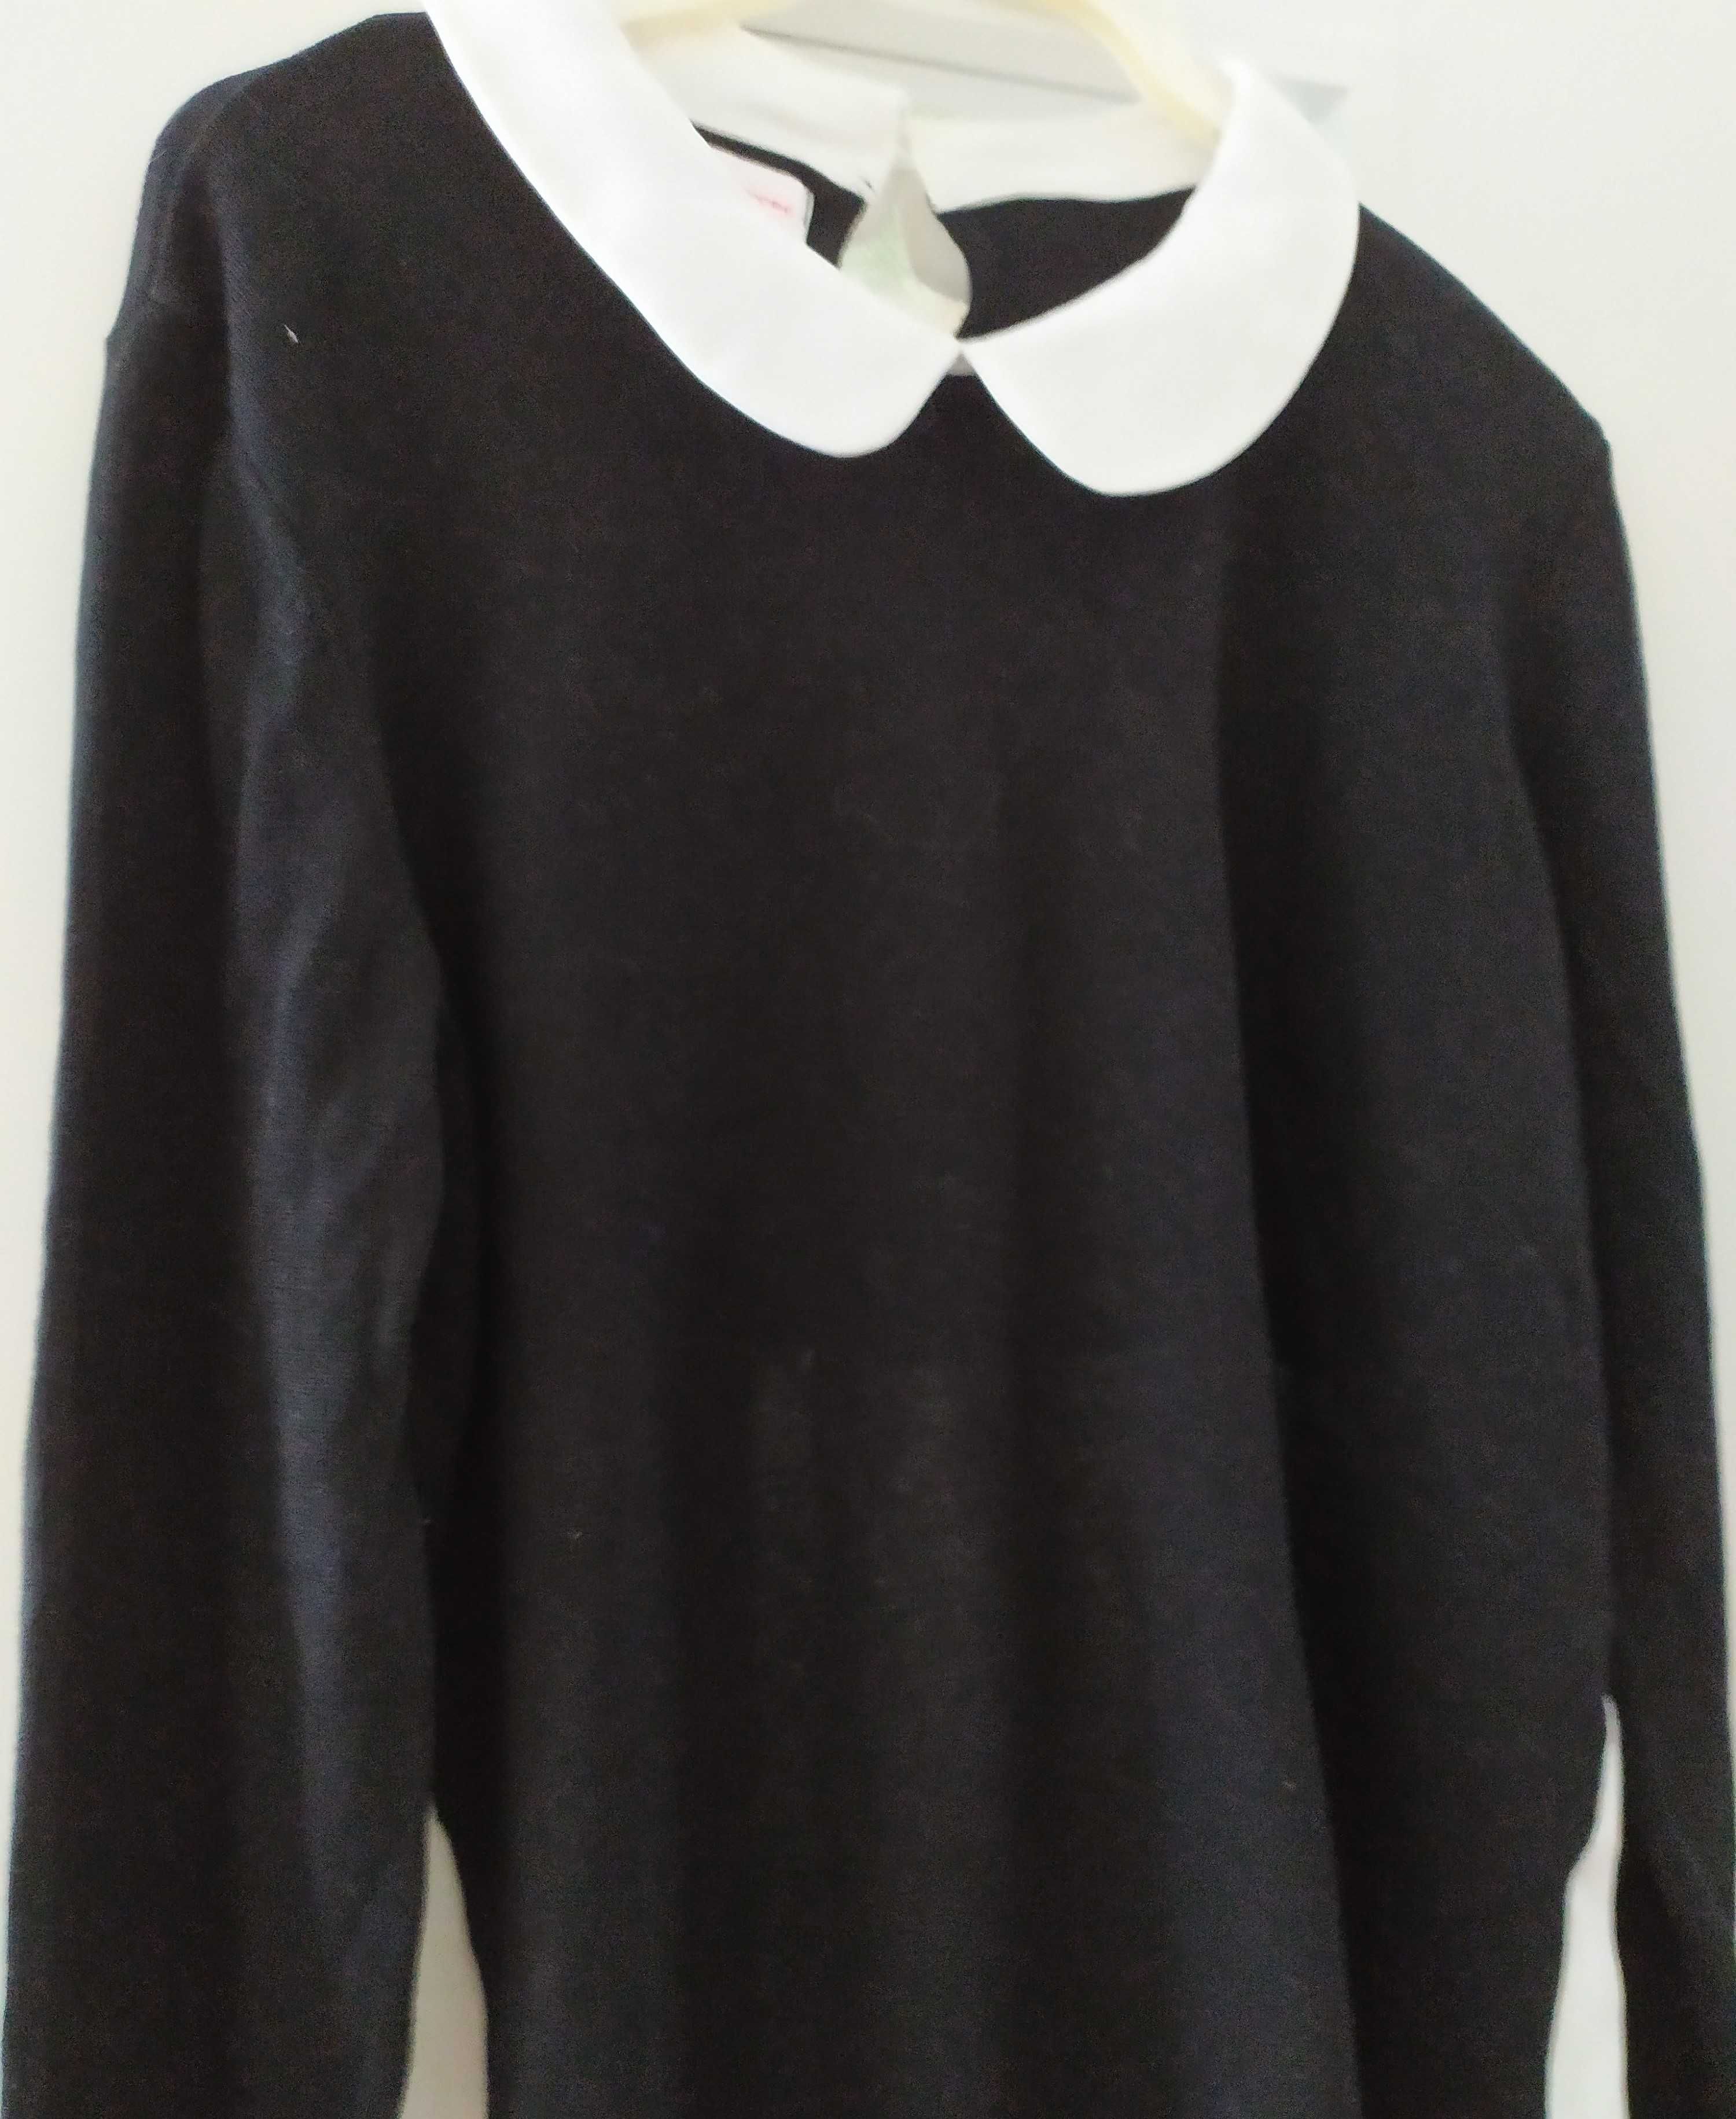 czarny cienki sweterek z białymi dodatkami marka Sheego rozmiar 46